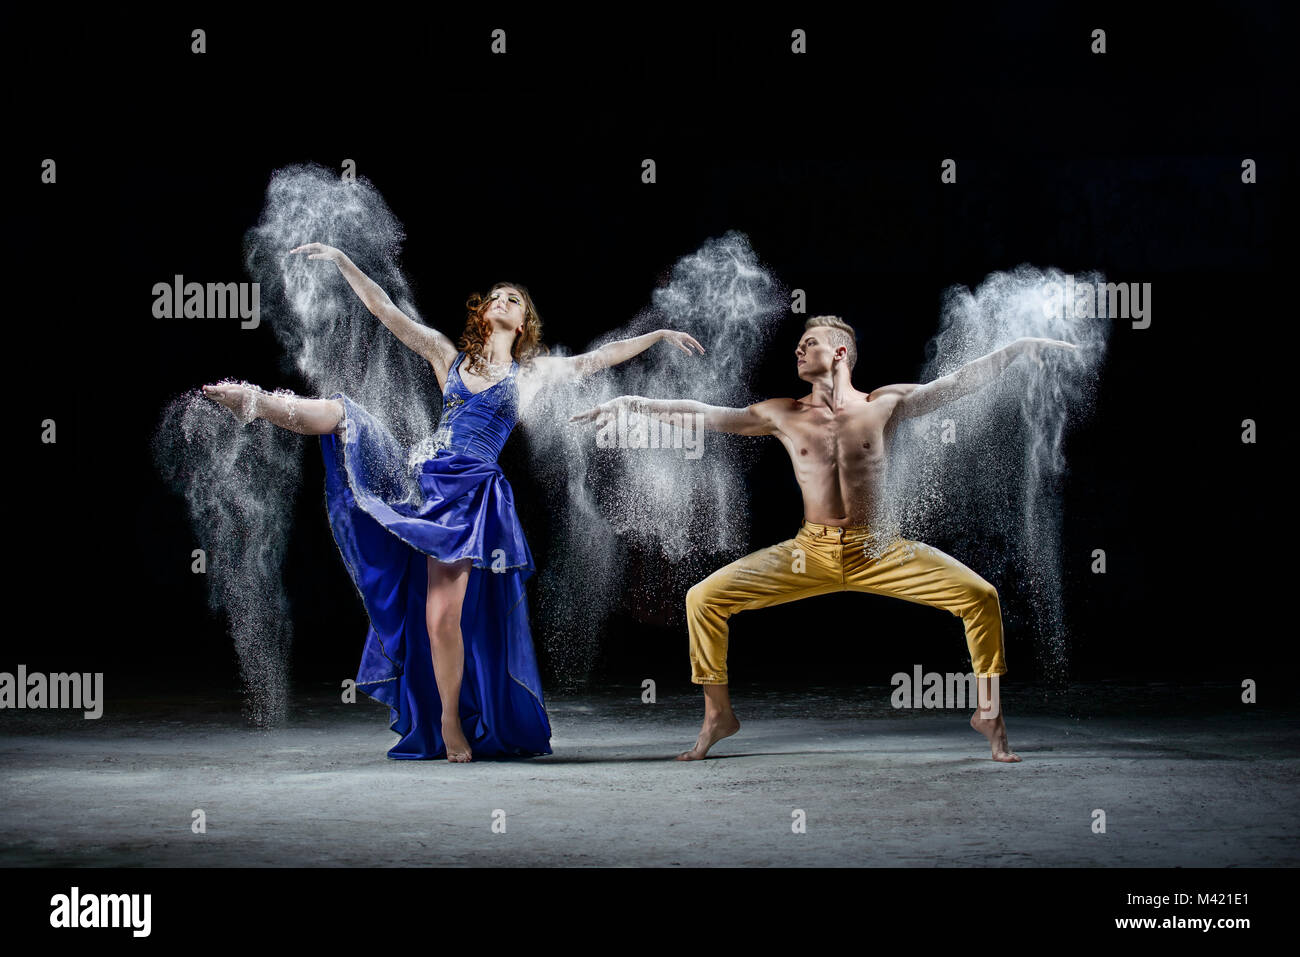 Le danze di coppia nelle tenebre, fare polvere bianca nuvola nel movimento di ballo. Foto Stock